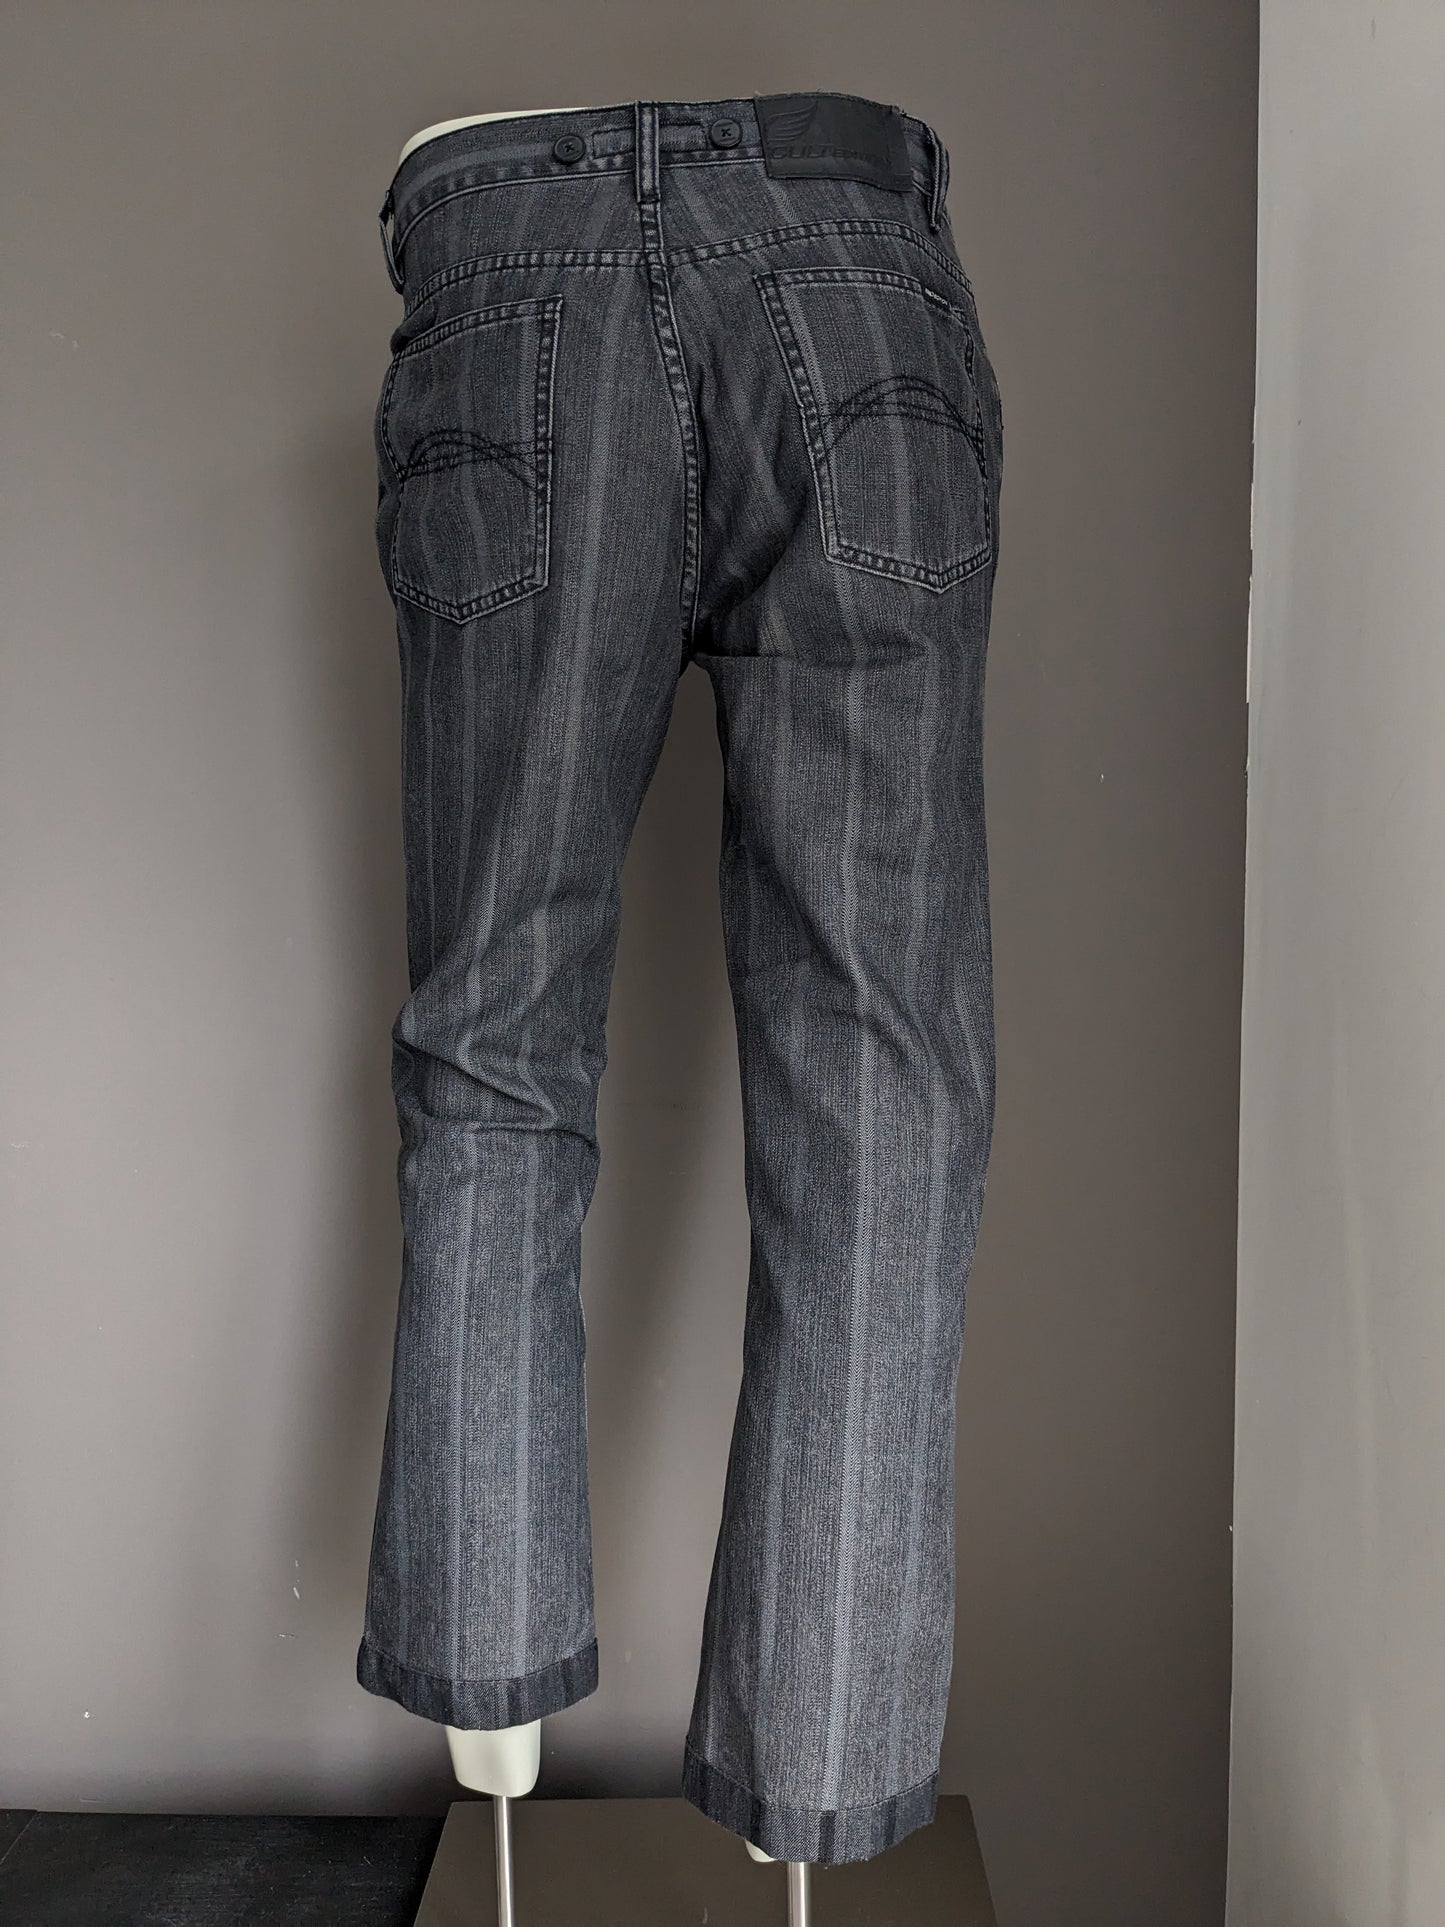 Jeans de edición de culto con aplicaciones de tirantes. Rayas negras grises. Tamaño W32 - L28.